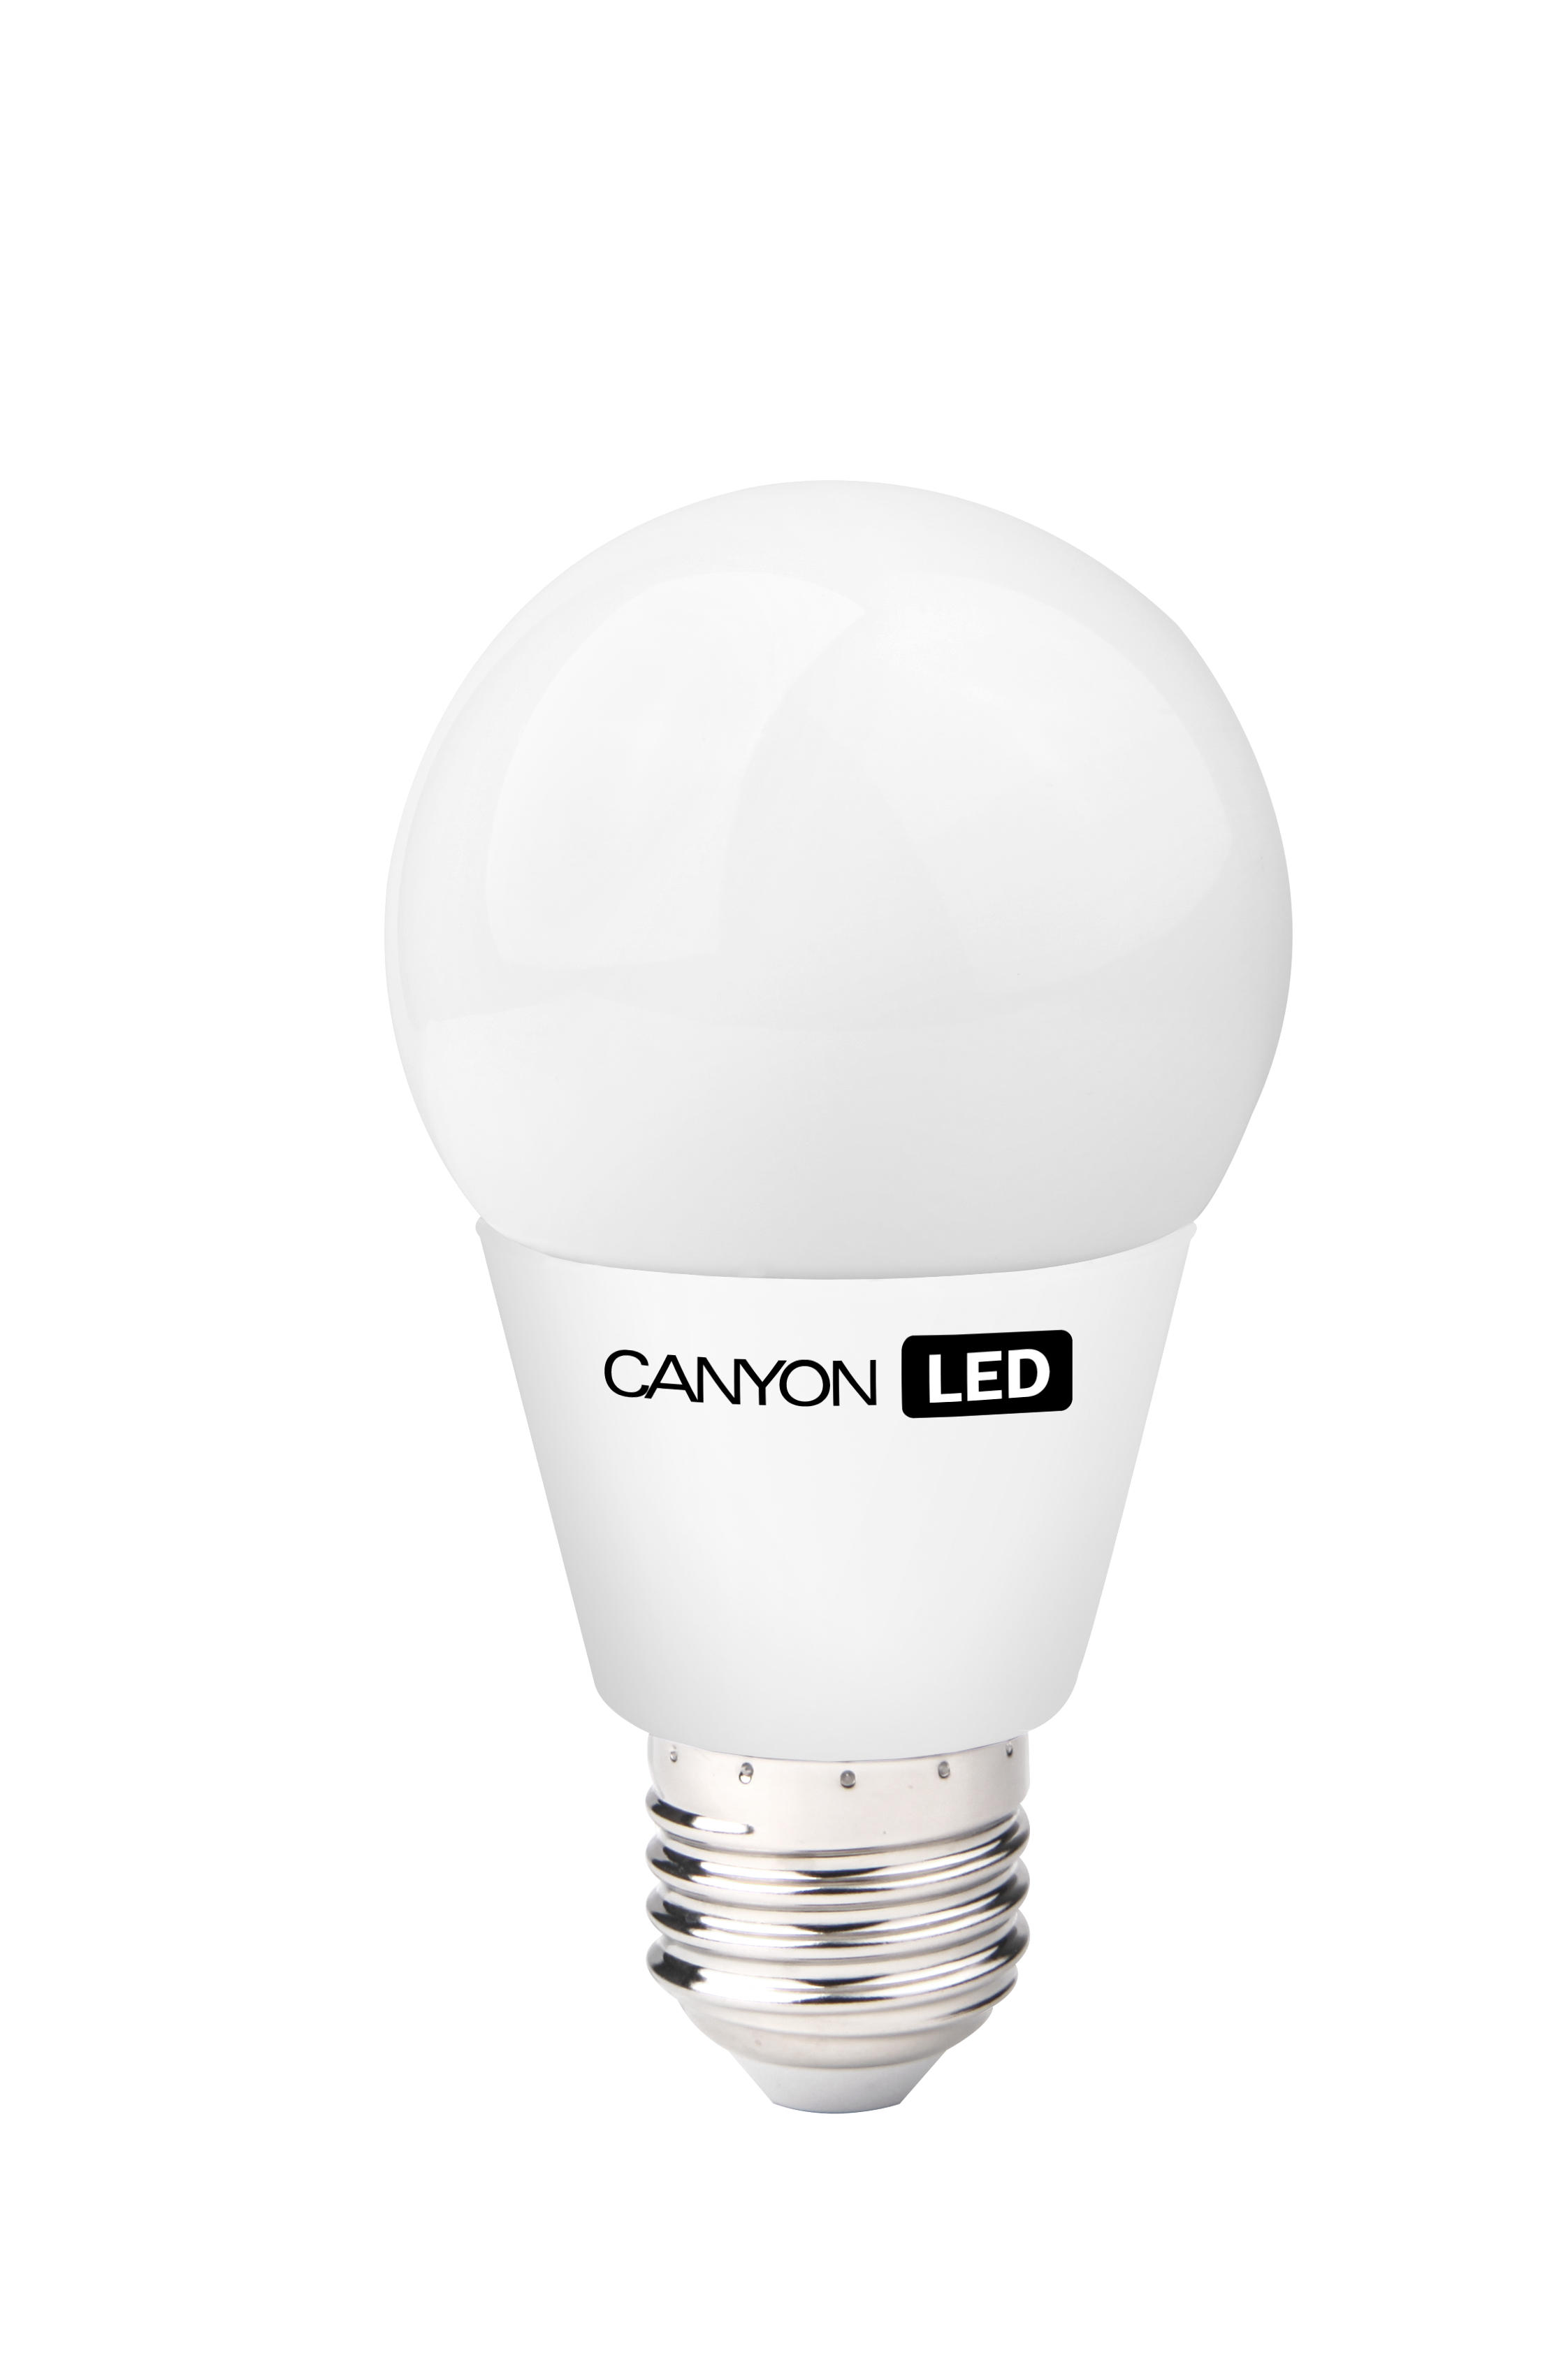 Canyon LED Lamp